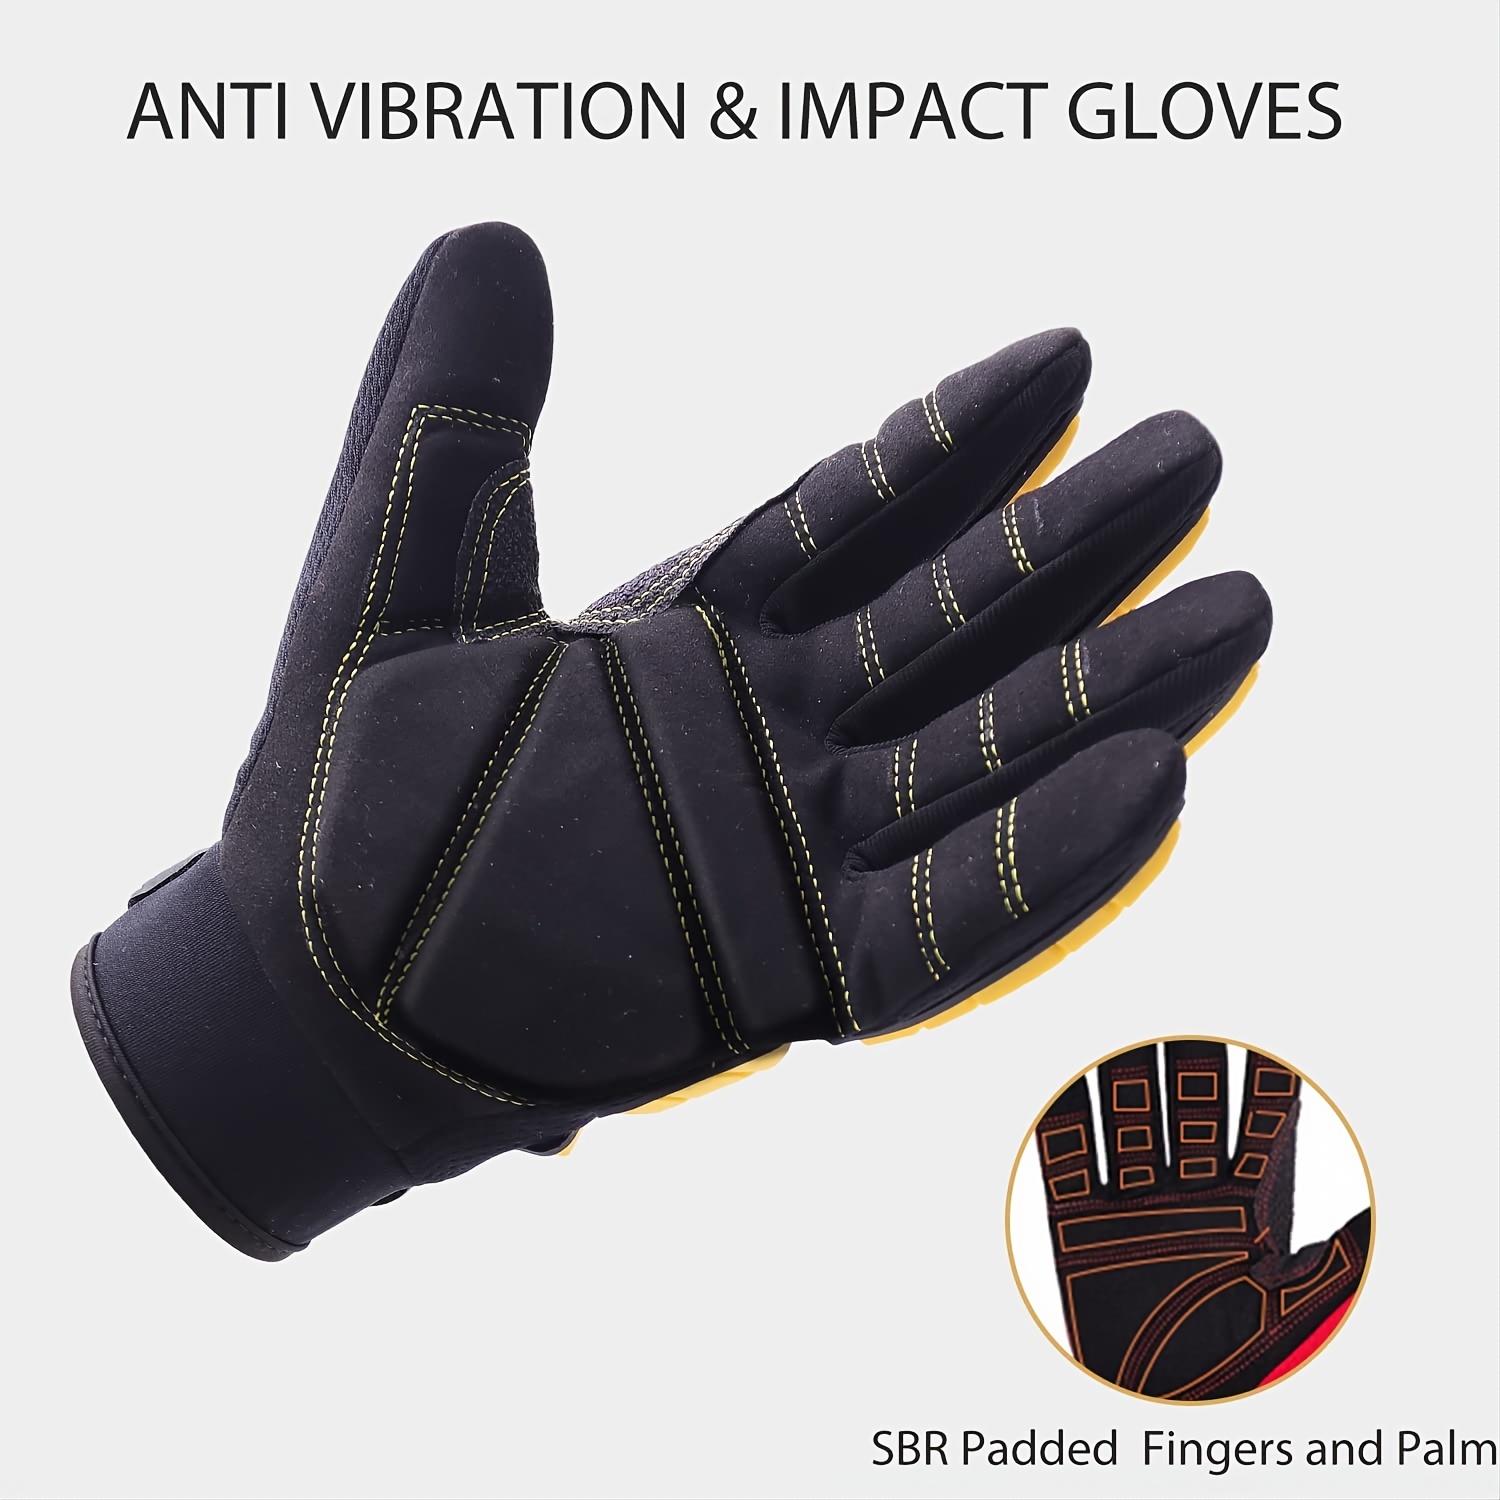 Non-Slip Silicone Box Handling Grip Mechanic Work Gloves for Men